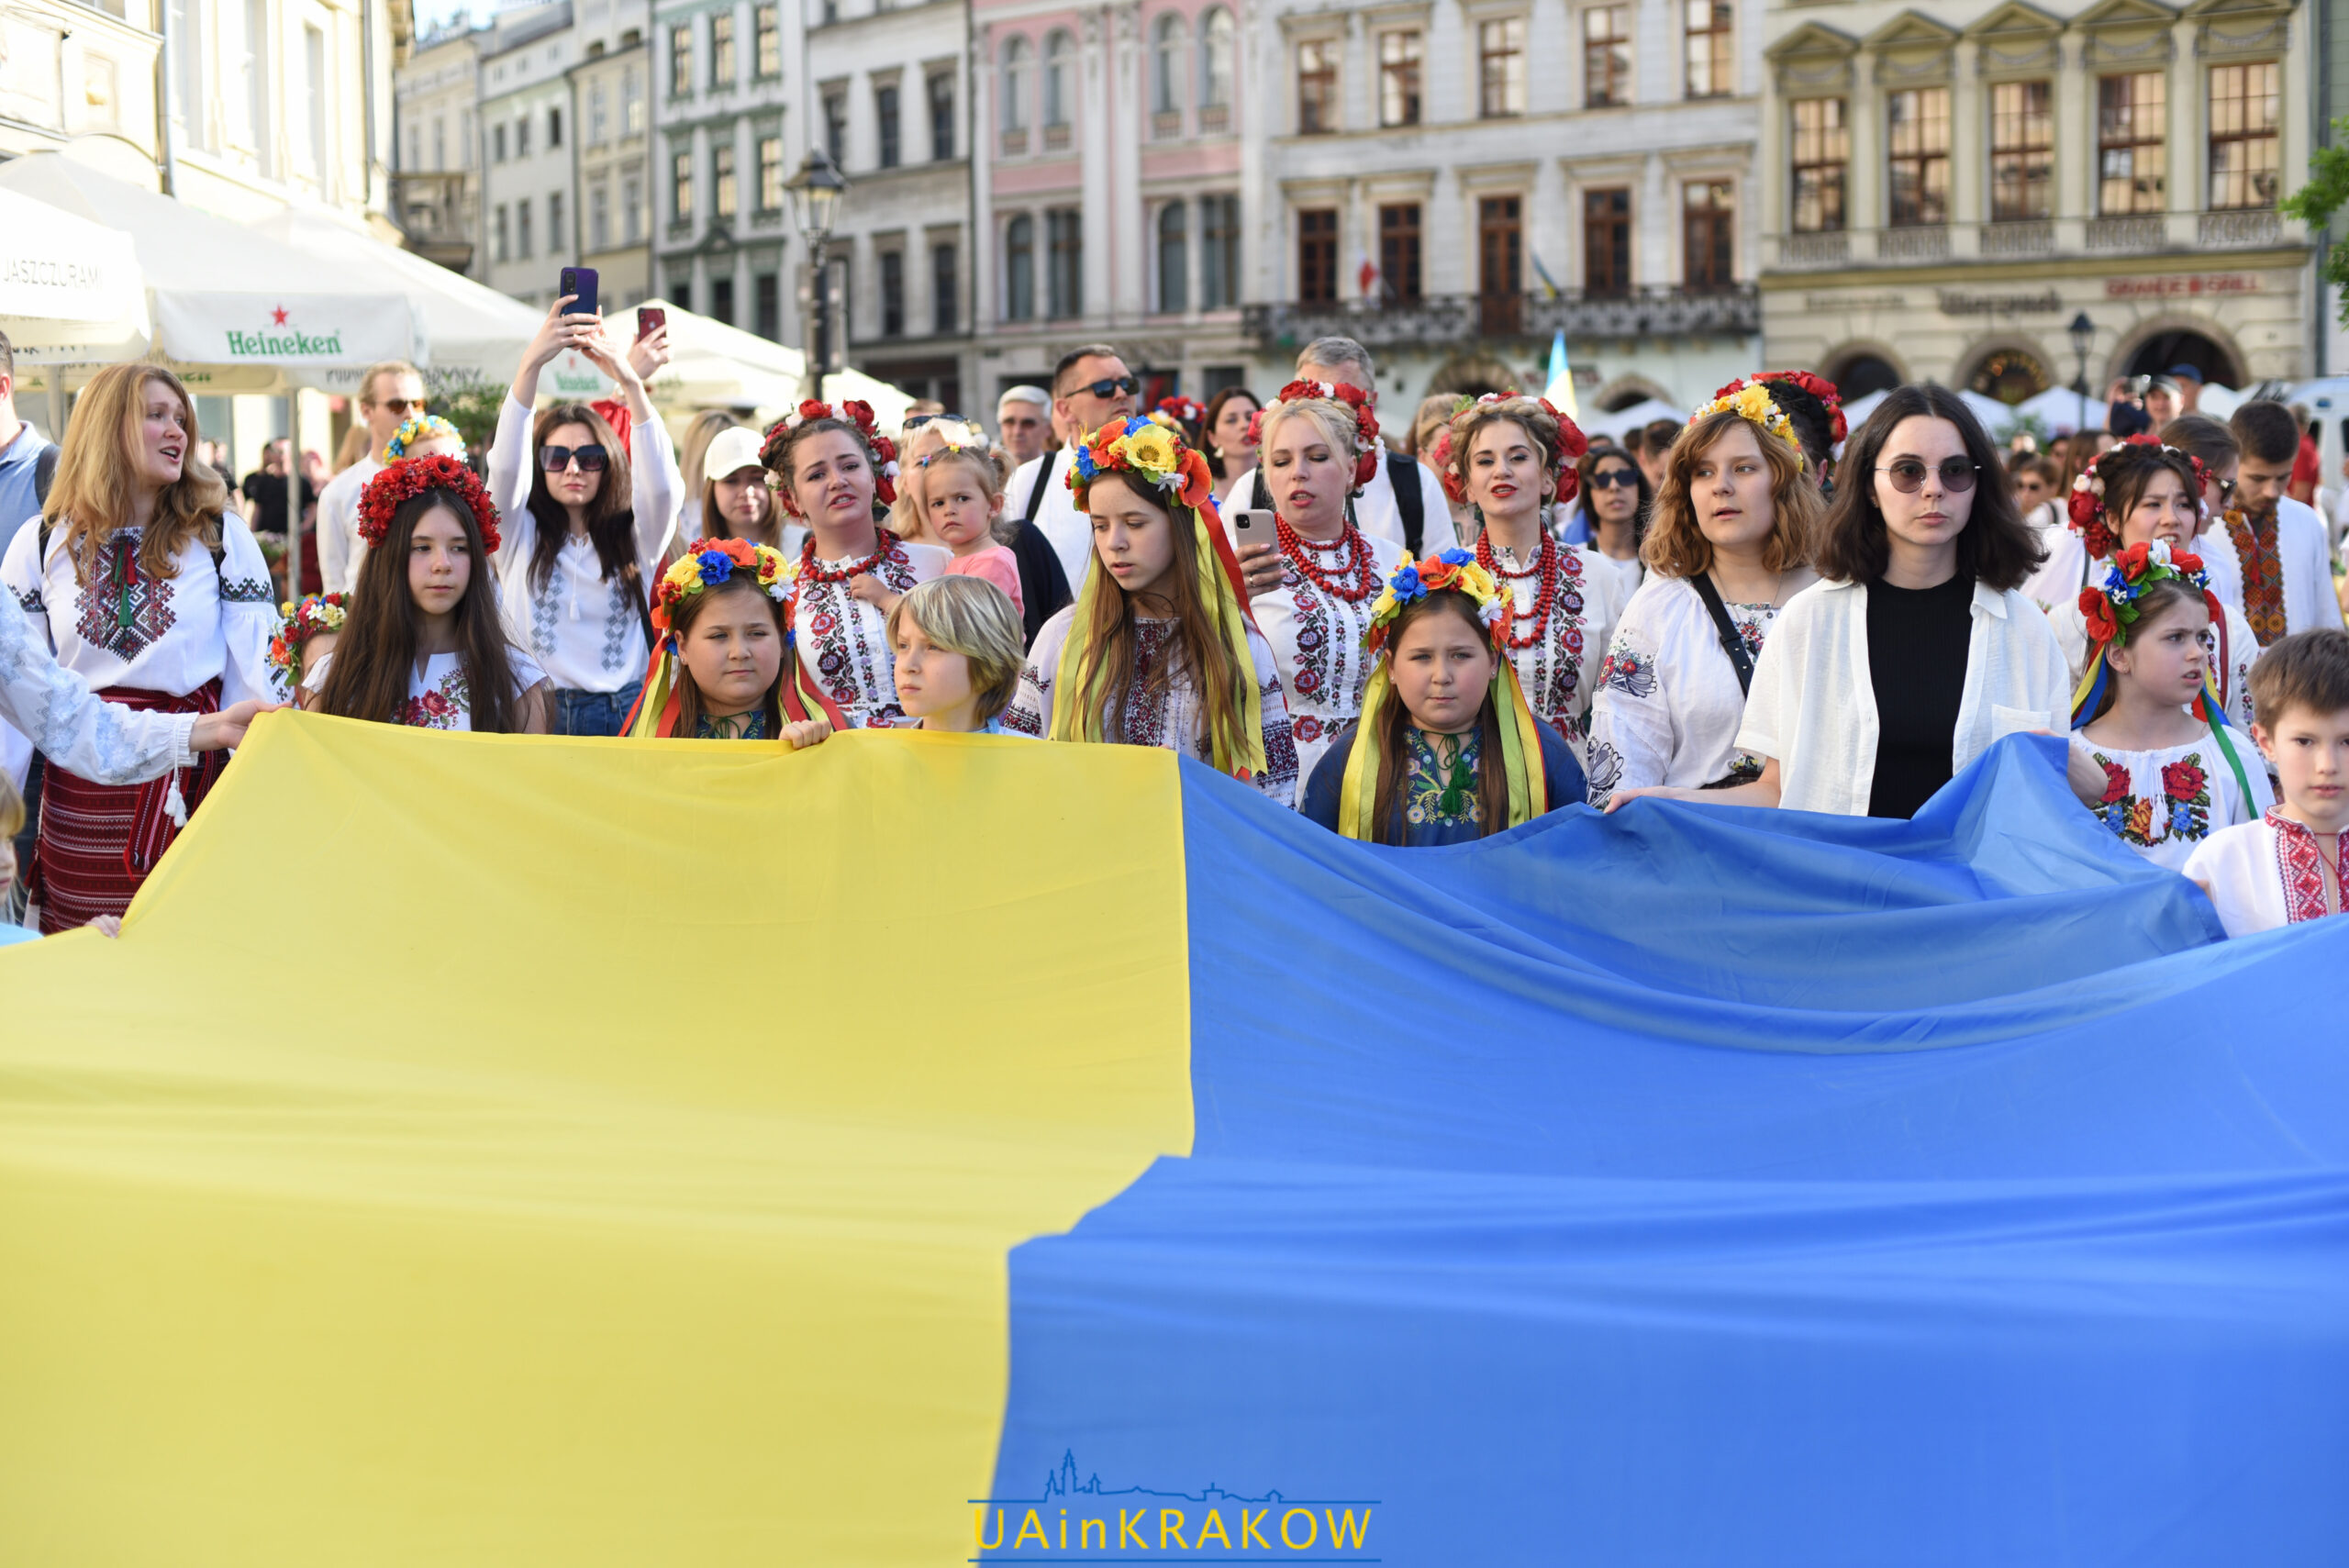 “Вишиванка надає крила”: як пройшов Марш вишиванки у Кракові [ФОТО] dsc 3550 scaled